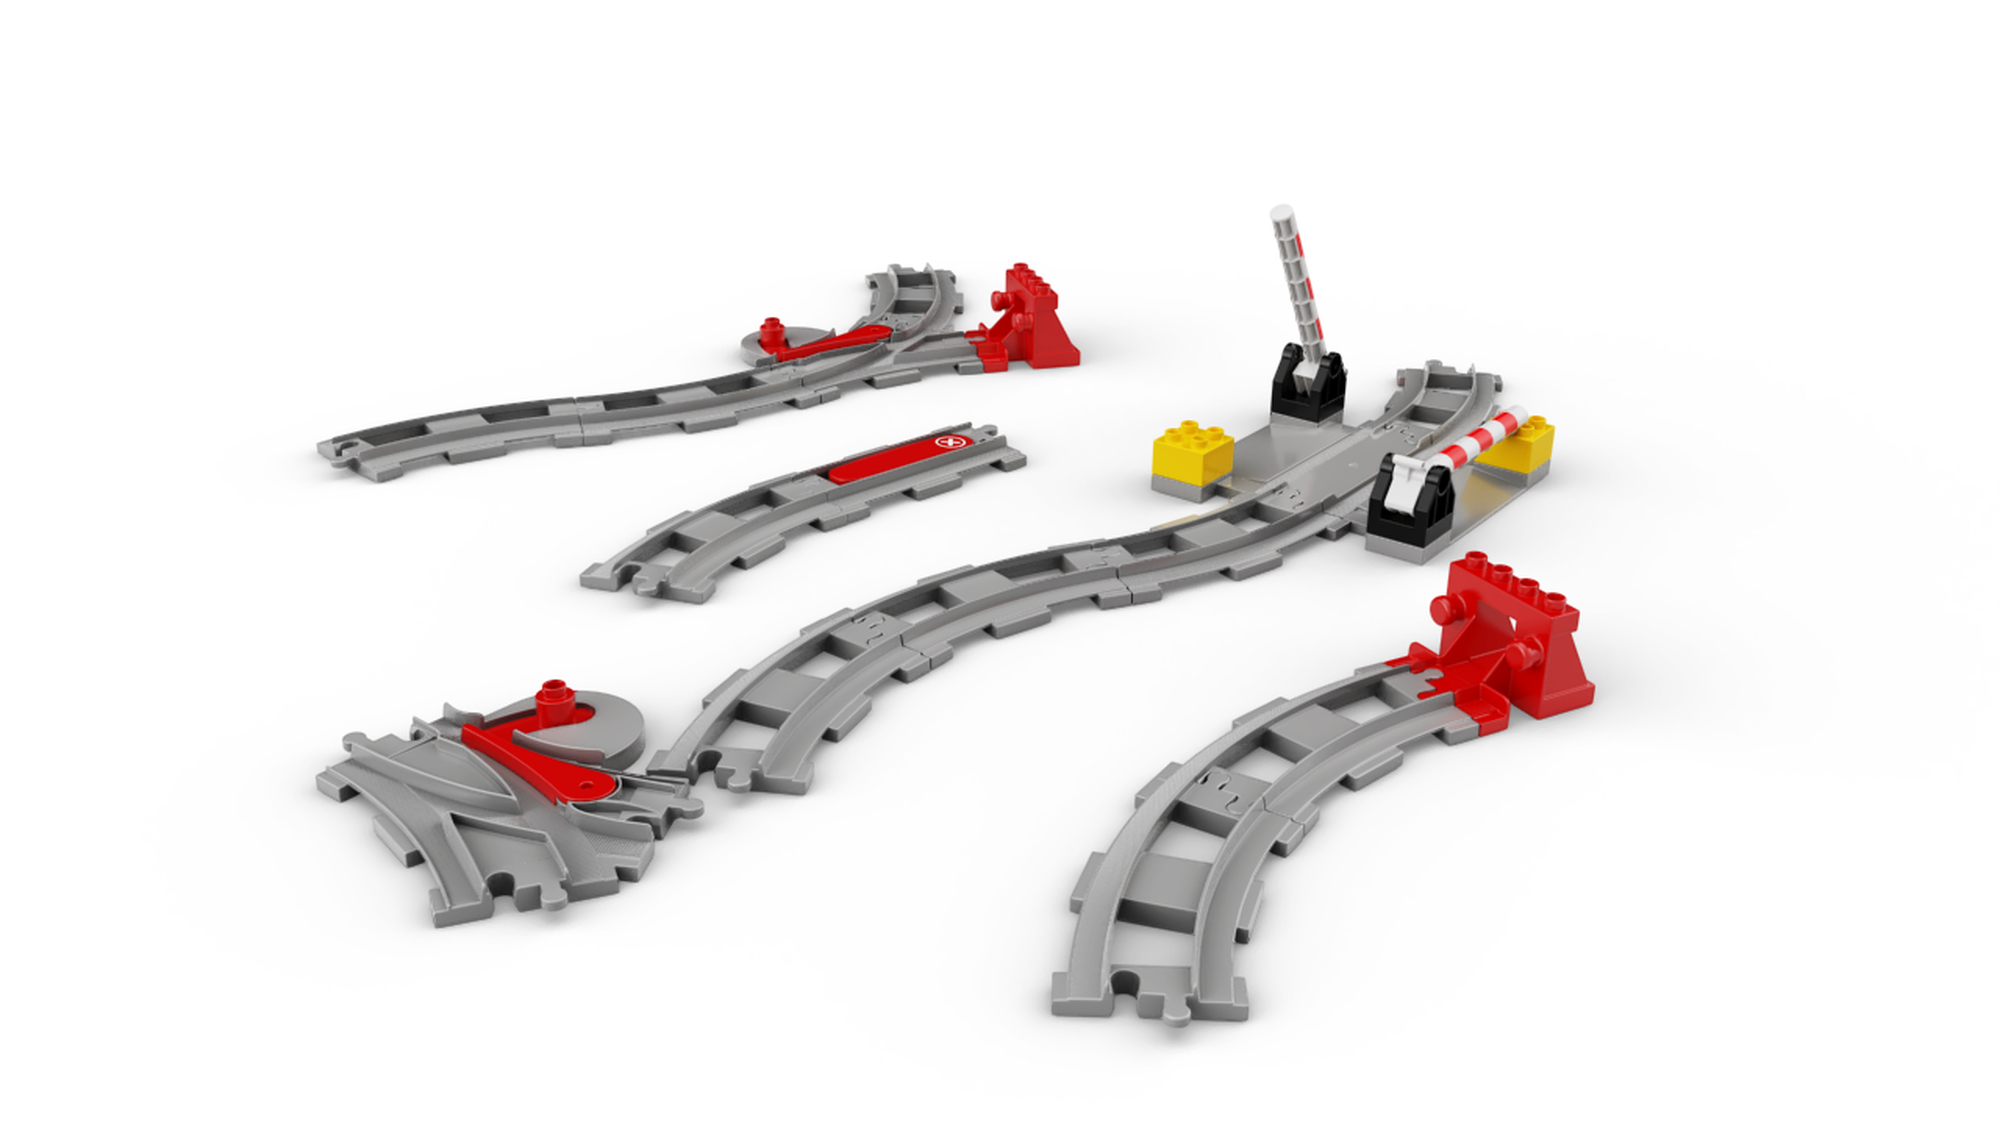 Lego Duplo Les Rails Du Train (10882)